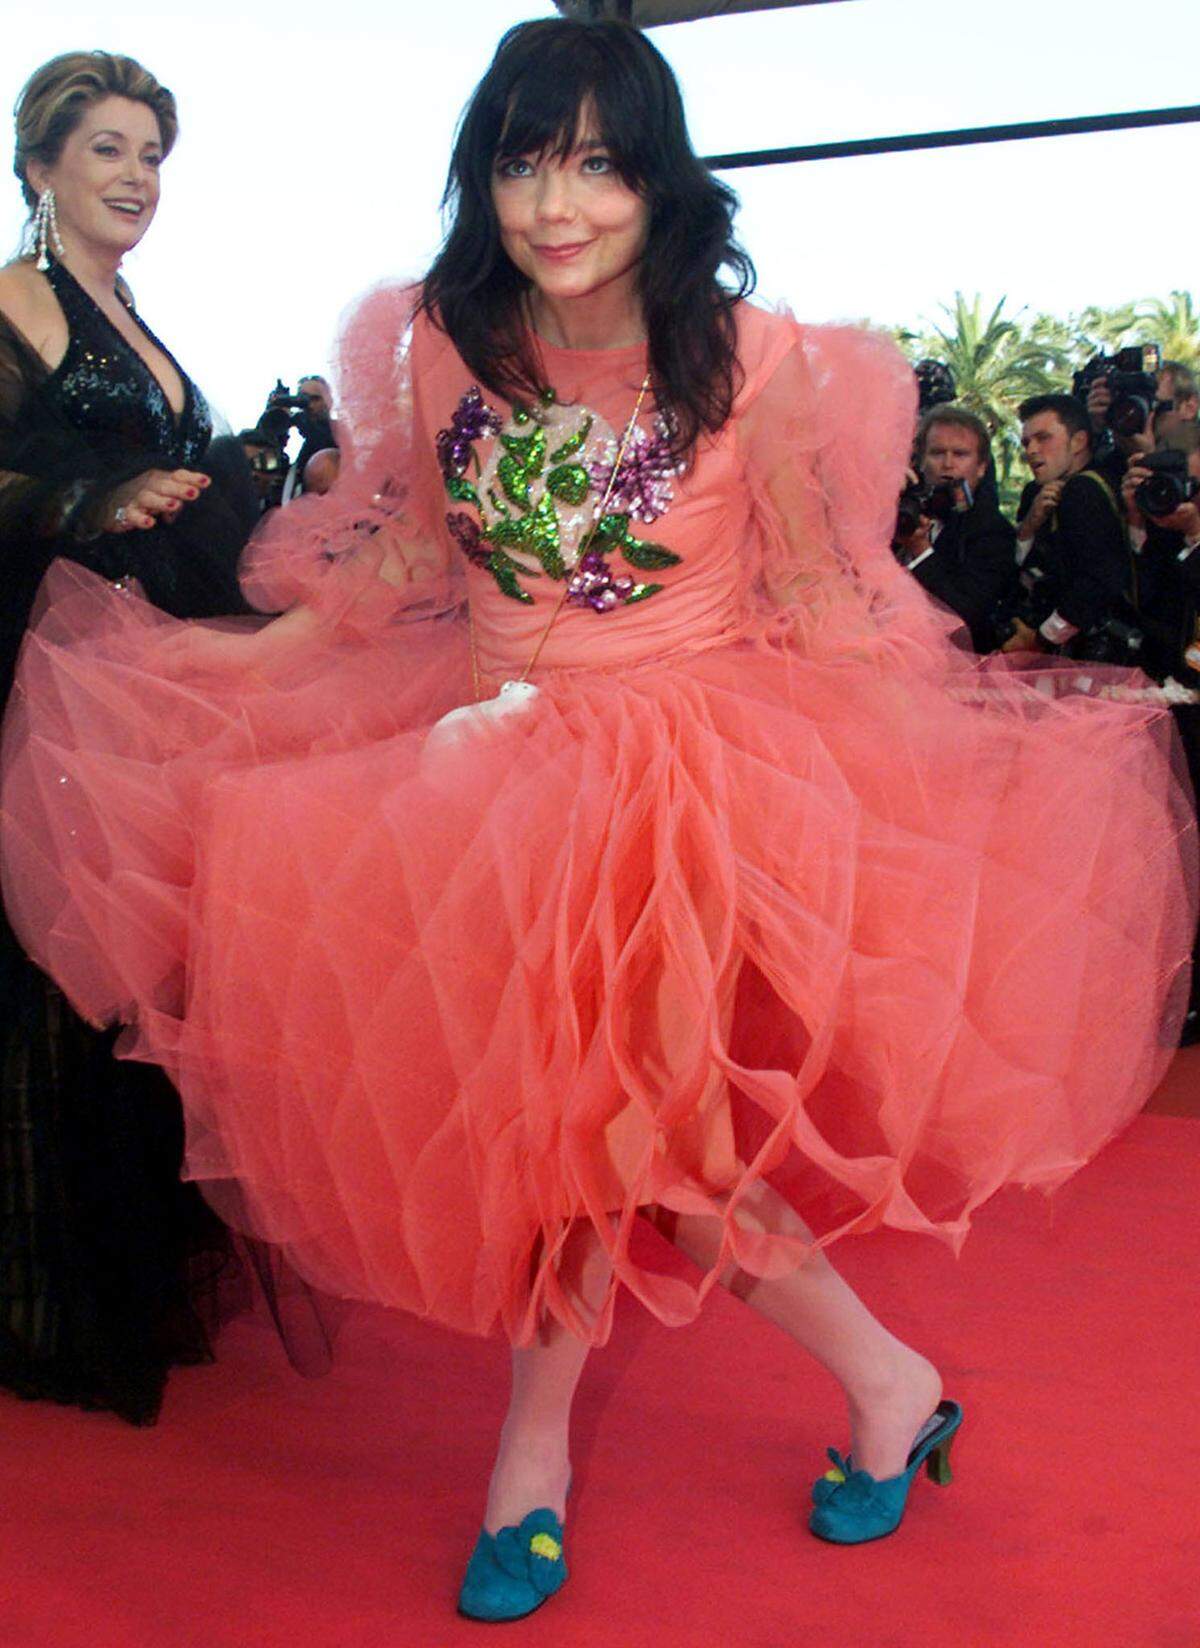 Für ihre exzentrischen Outfits auf dem roten Teppich ist die isländische Musikerin Björk bekannt. In Cannes machte sie 2000 keine Ausnahme.